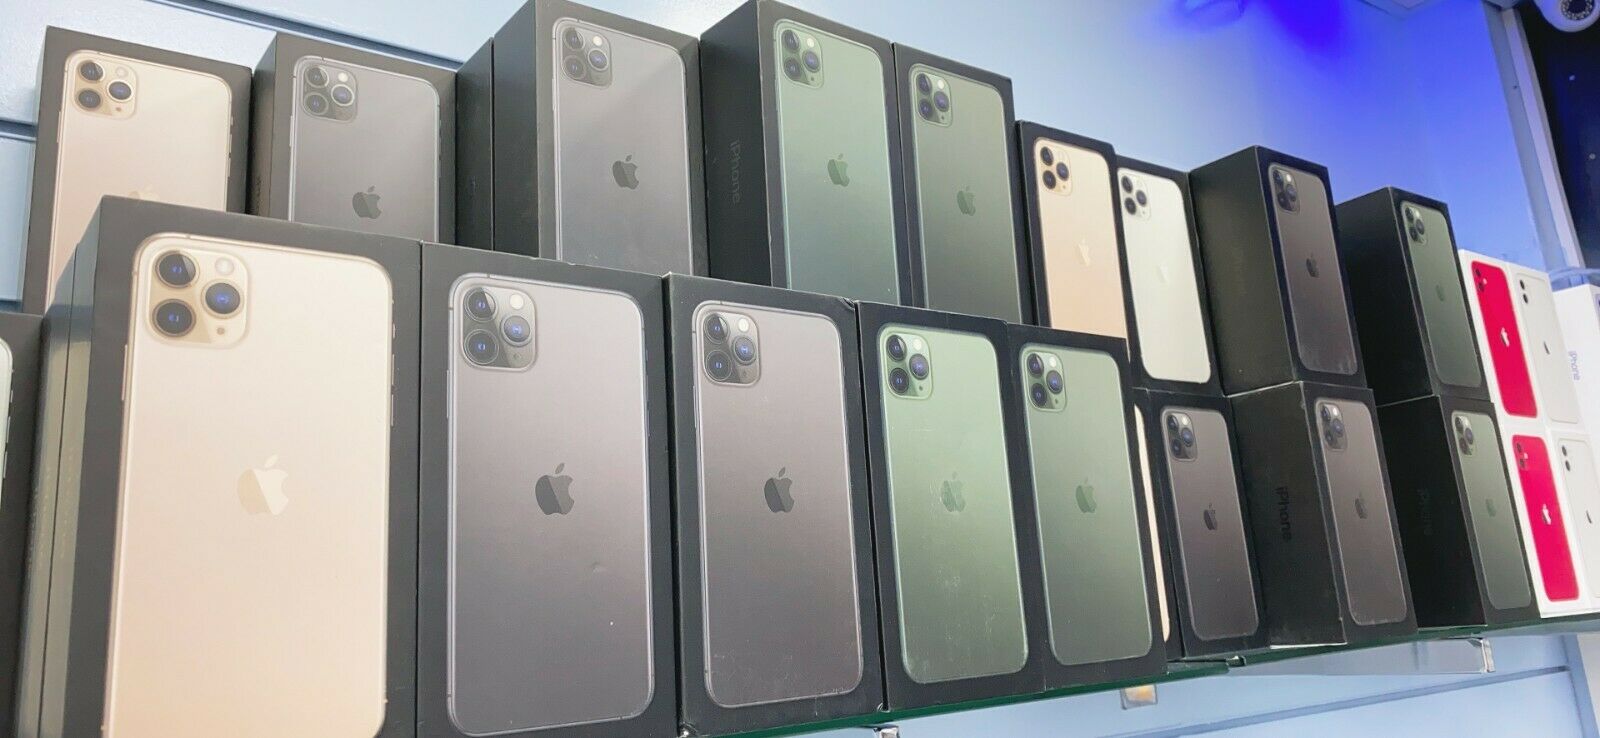 Ofert pr Apple iPhone 11, 11 Pro dhe 11 Pro Max pr shitje me shumic mimi.